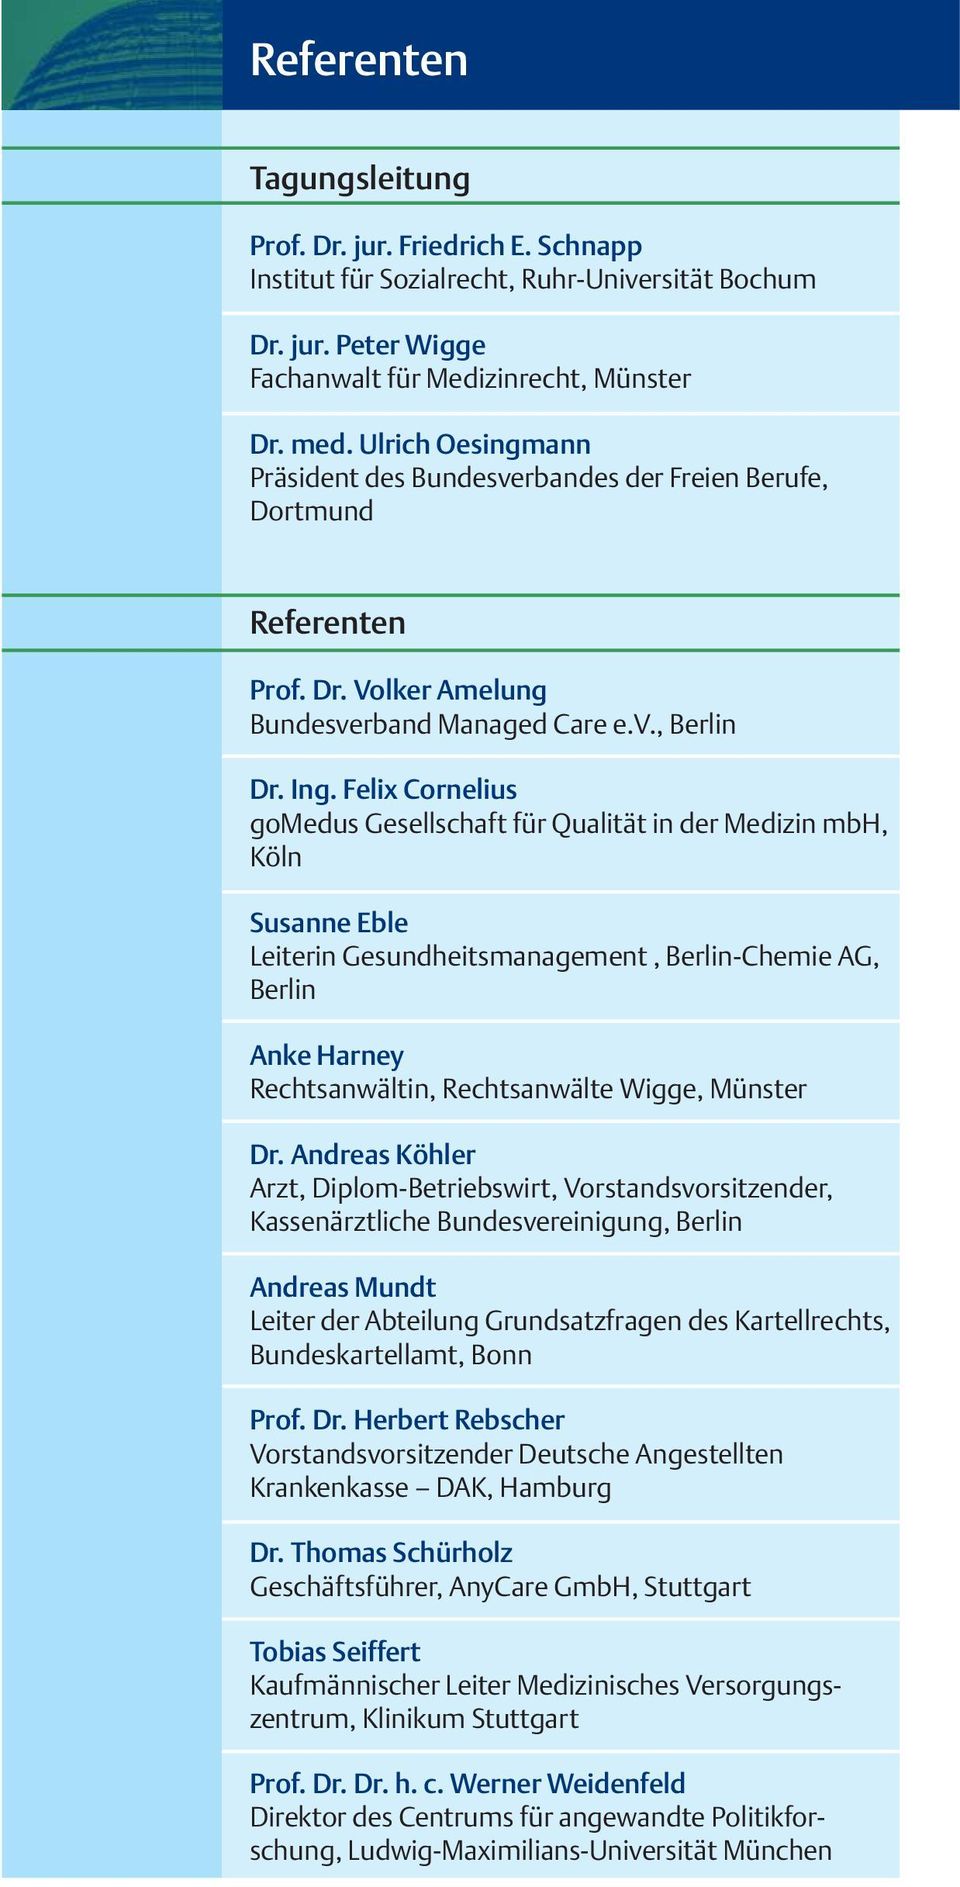 Felix Cornelius gomedus Gesellschaft für Qualität in der Medizin mbh, Köln Susanne Eble Leiterin Gesundheitsmanagement, Berlin-Chemie AG, Berlin Anke Harney Rechtsanwältin, Rechtsanwälte Wigge,